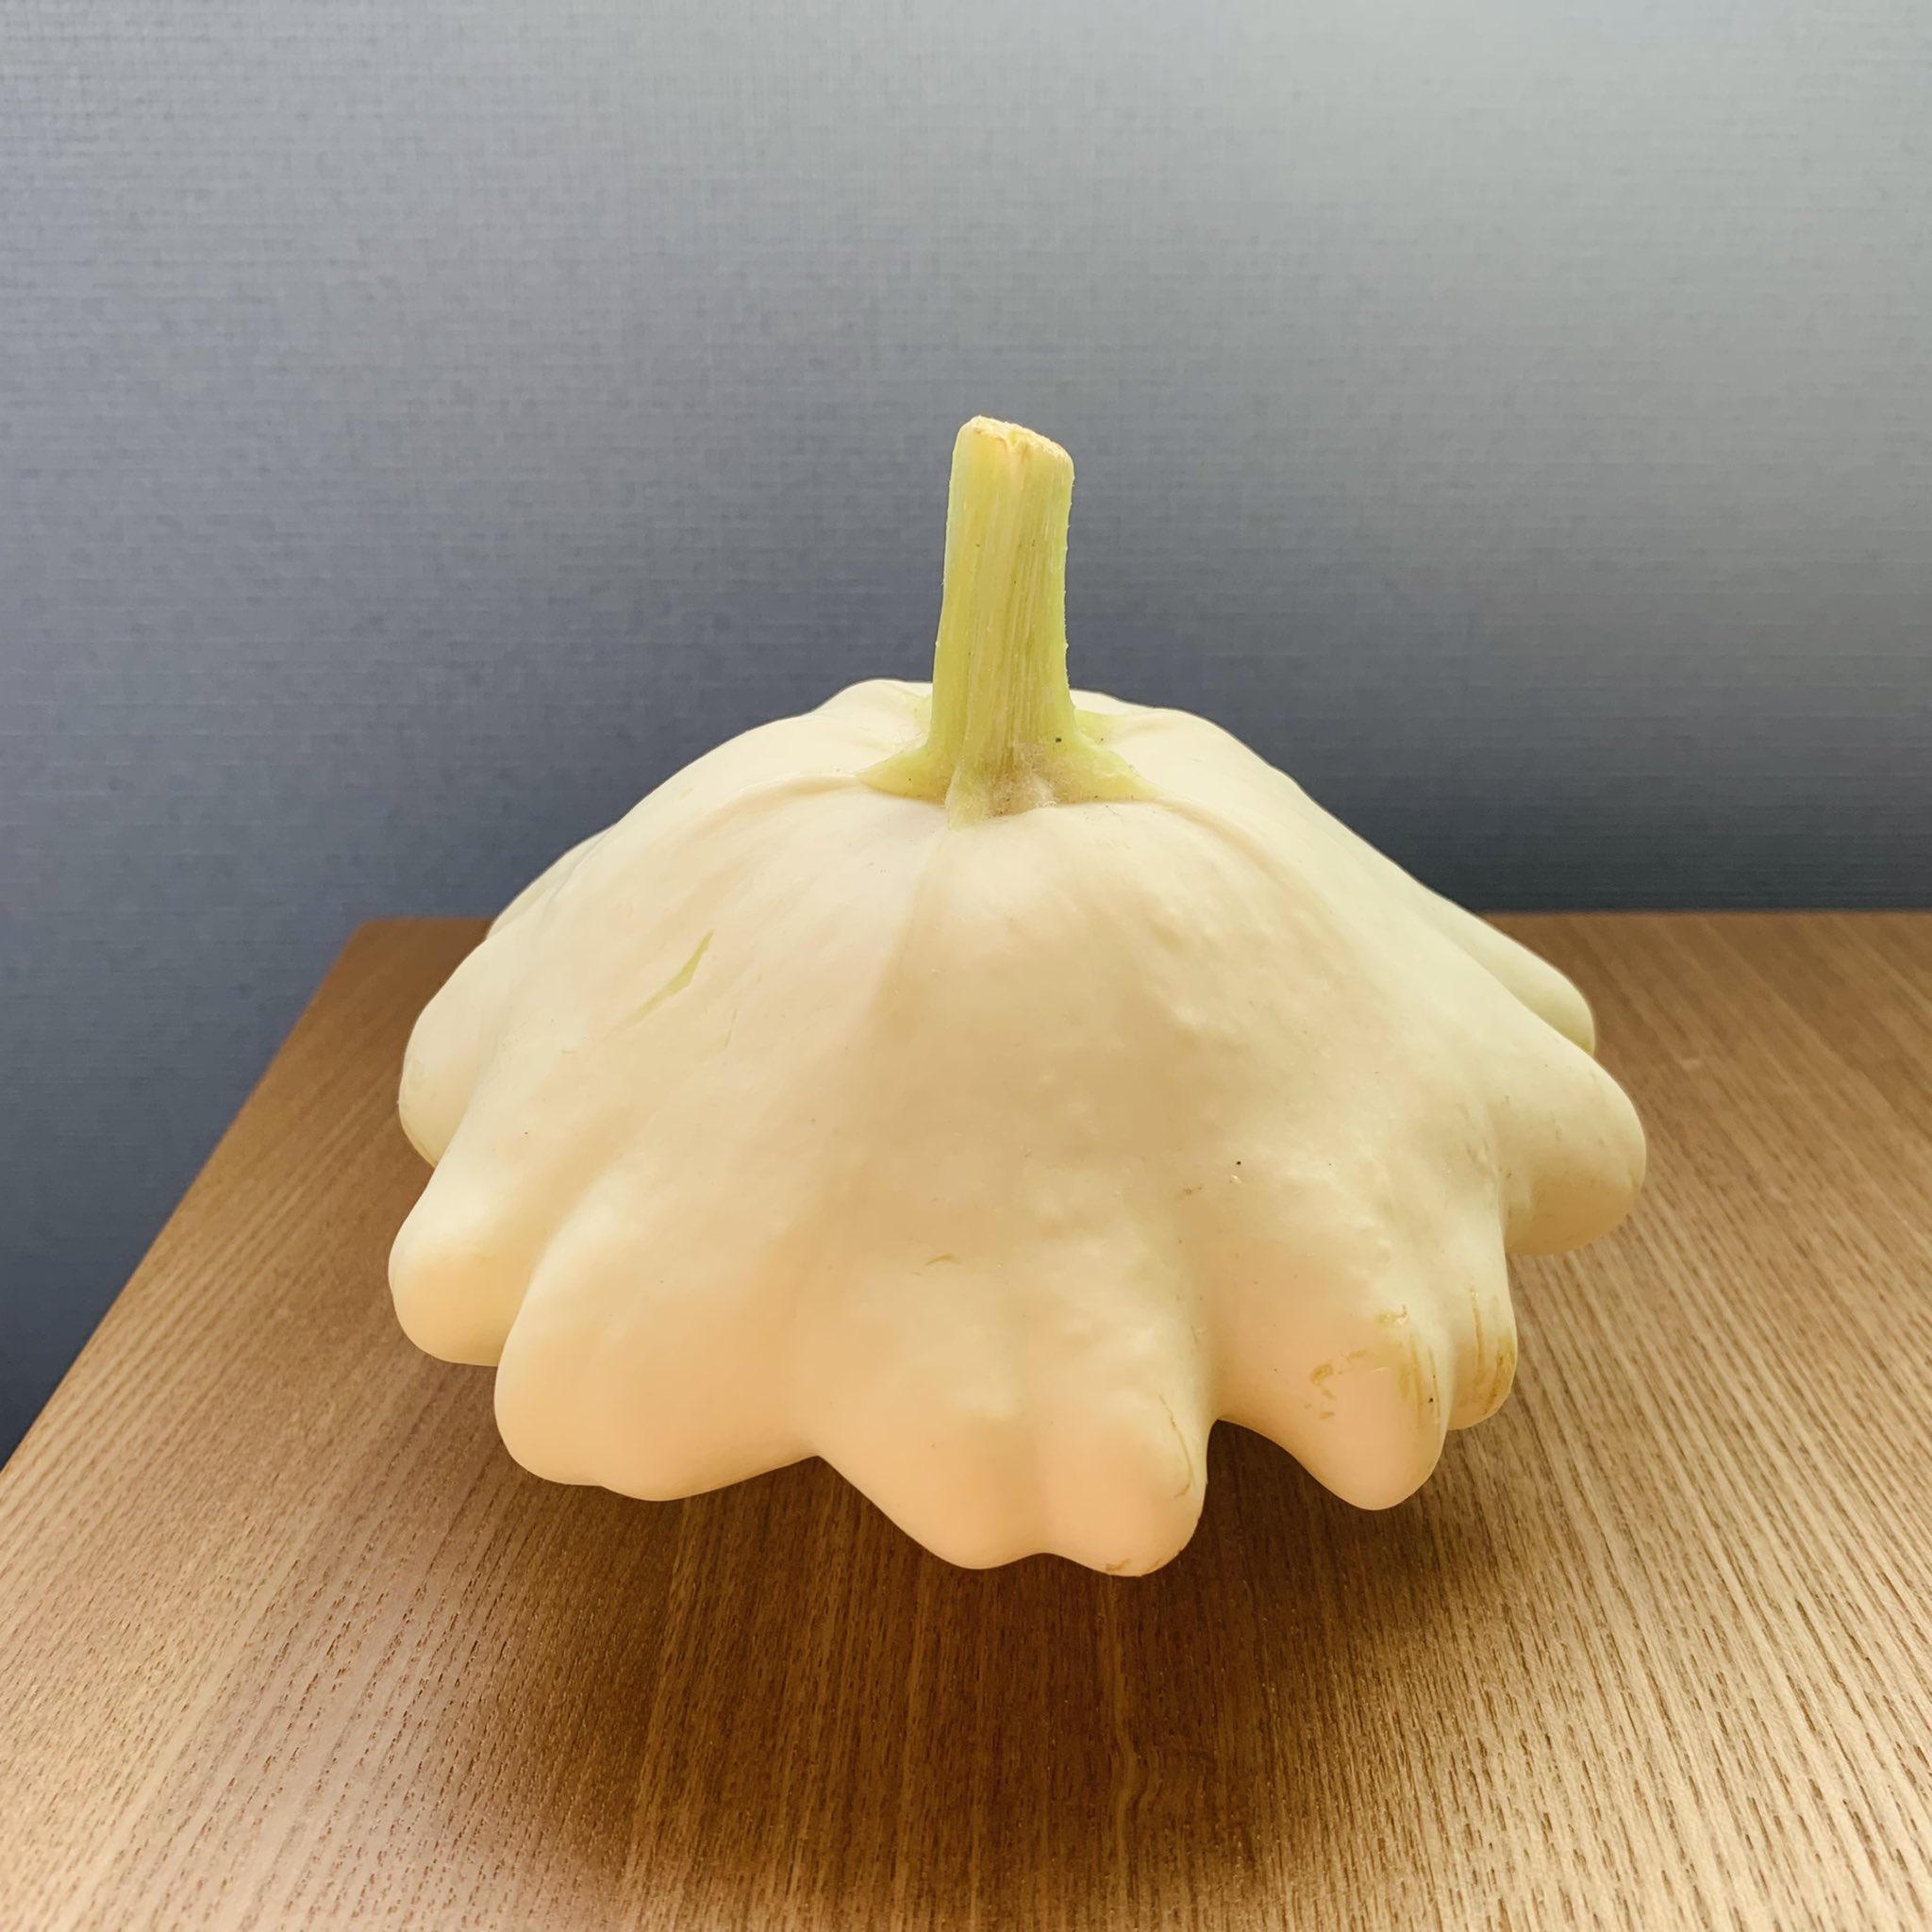 林 摩耶 Maya Hayashi パティソンズッキーニ という名の野菜 別名 Ufoズッキーニ とか ズッキーニはかぼちゃの一種なので パティソンかぼちゃ とも言うらしい 何作ろうかなー T Co 2a4vgwe8w3 Twitter